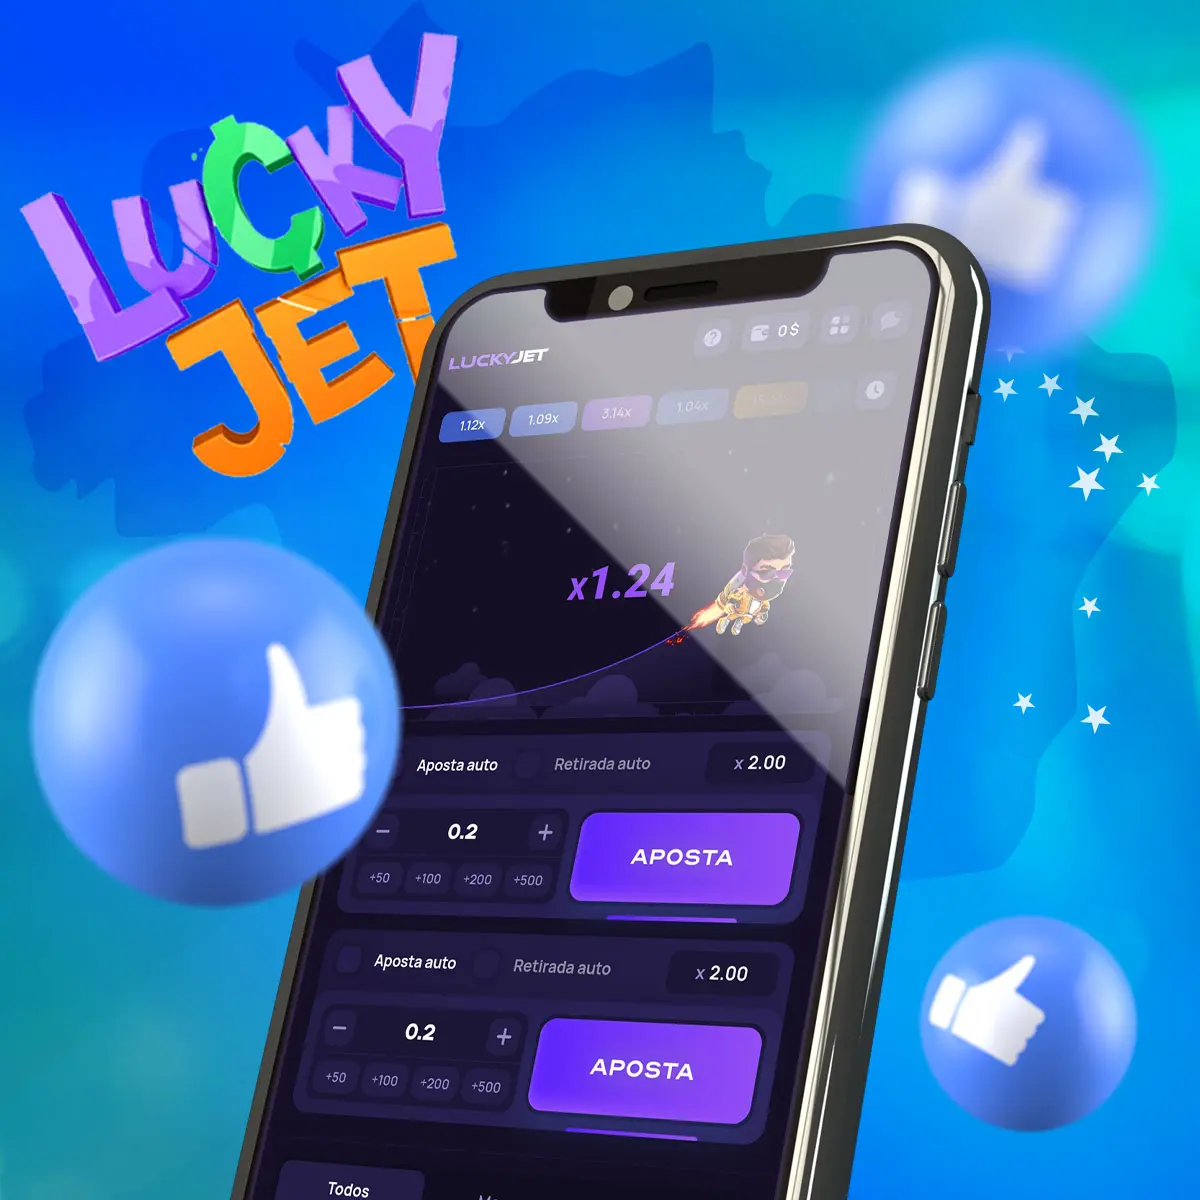 Guia passo a passo sobre como começar a jogar 1Win's Lucky Jet no Brasil